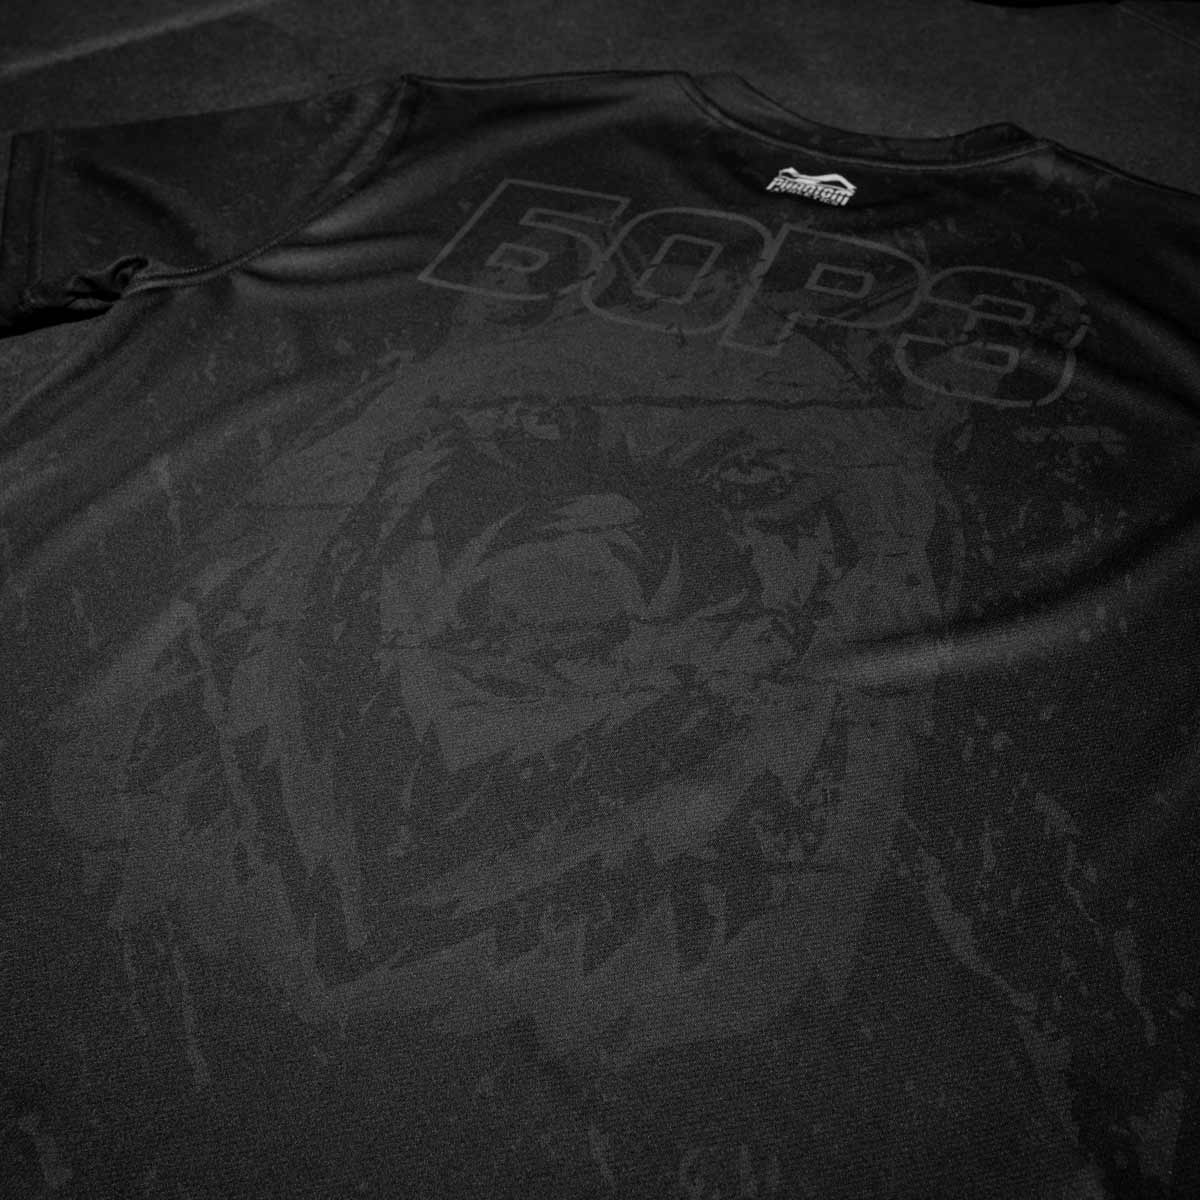 Phantom BORZ БОРЗ EVO Shirt. Das ideale Trainingsshirt für deinen Kampfsport. Im Tschetschenien Wolf Design mit russischem WOLF Schriftzug. Perfekt für MMA, Muay Thai, Kickboxen, Ringen und Grappling.